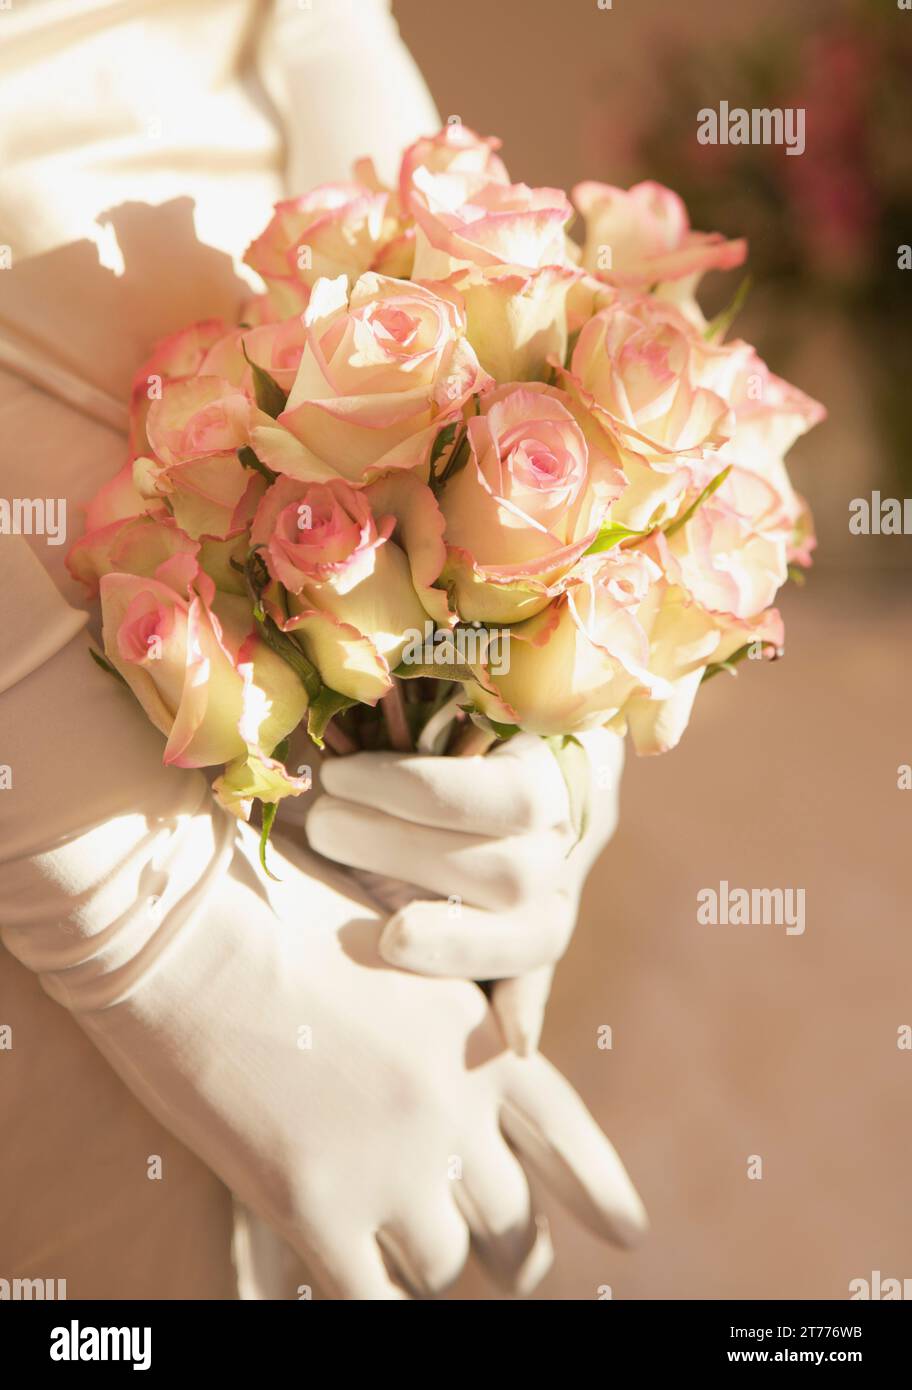 Nahaufnahme von einer Braut behandschuhten Hände halten einen Strauß Rosen Stockfoto